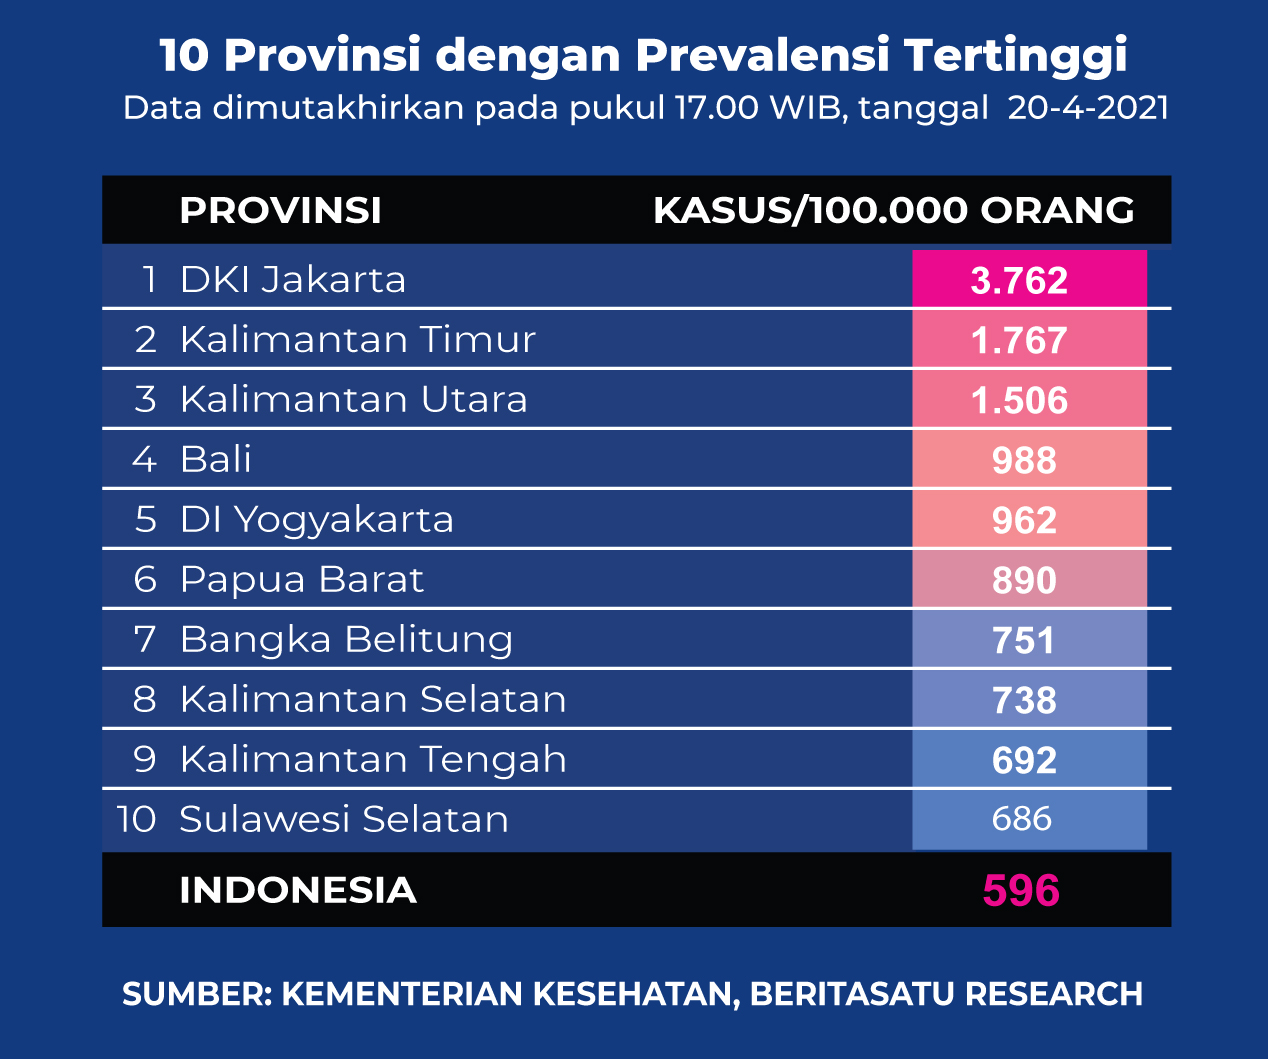 Data 10 Provinsi dengan Prevalensi Tertinggi Covid-19 pada 20 April 2021